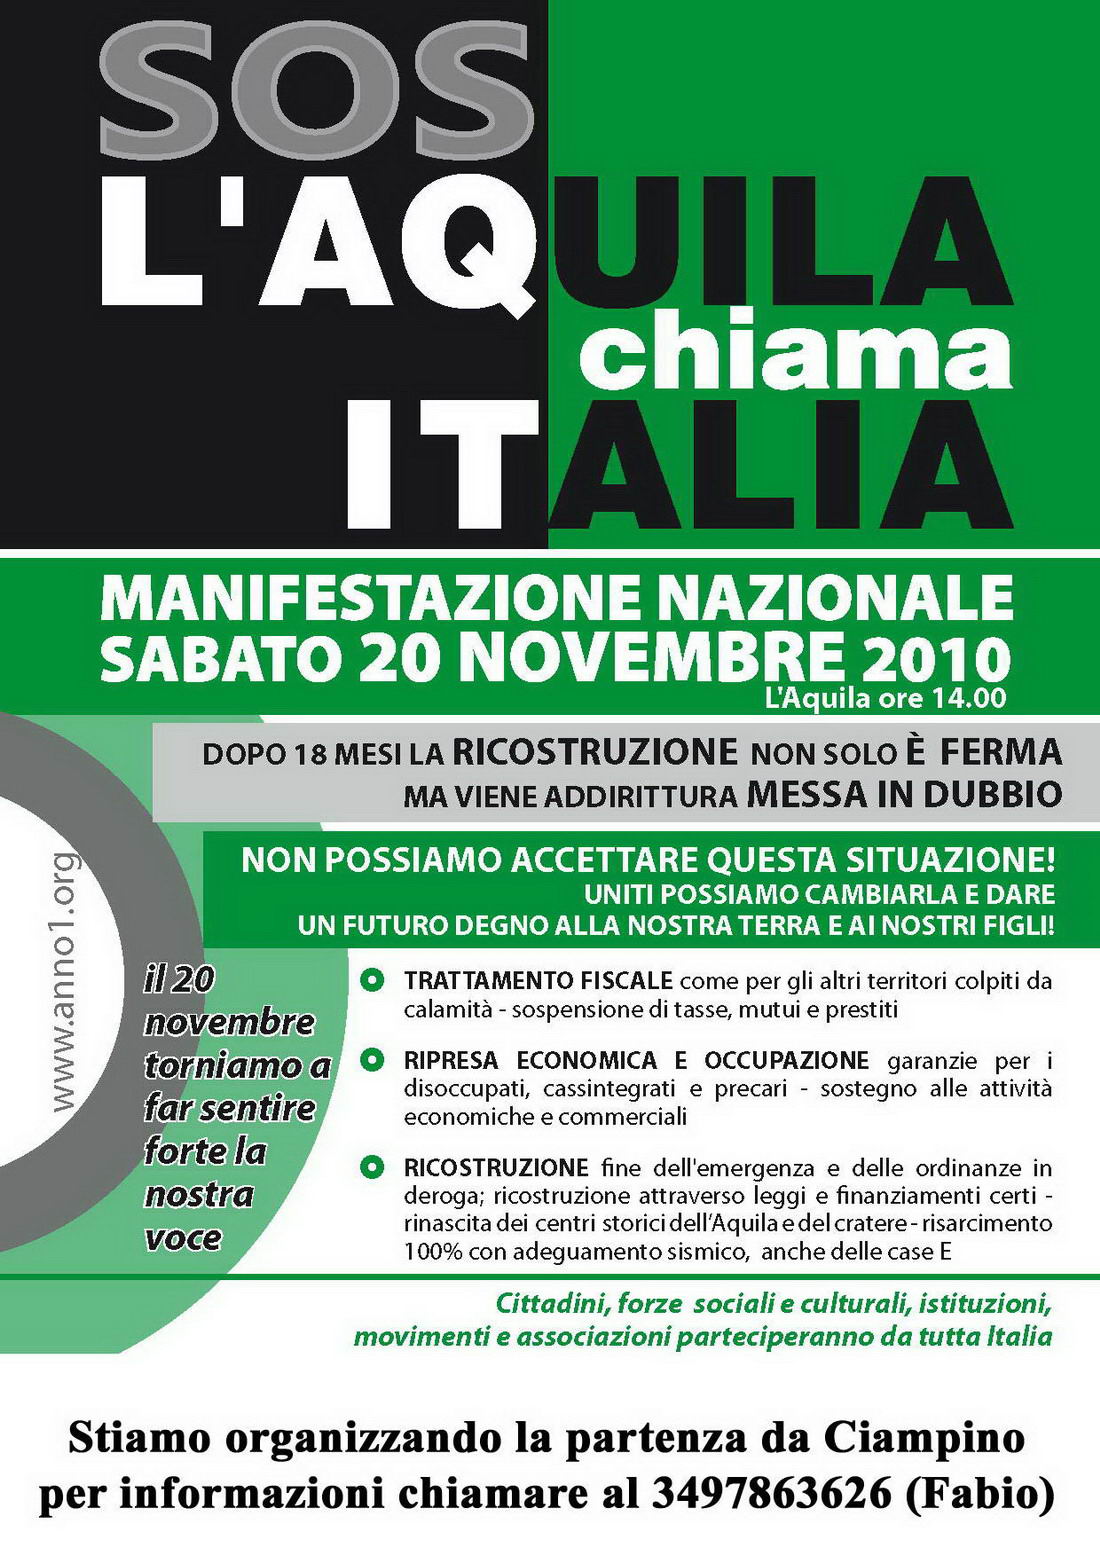 L'Aquila chiama Italia, sabato 20 novembre manifestazione nazionale